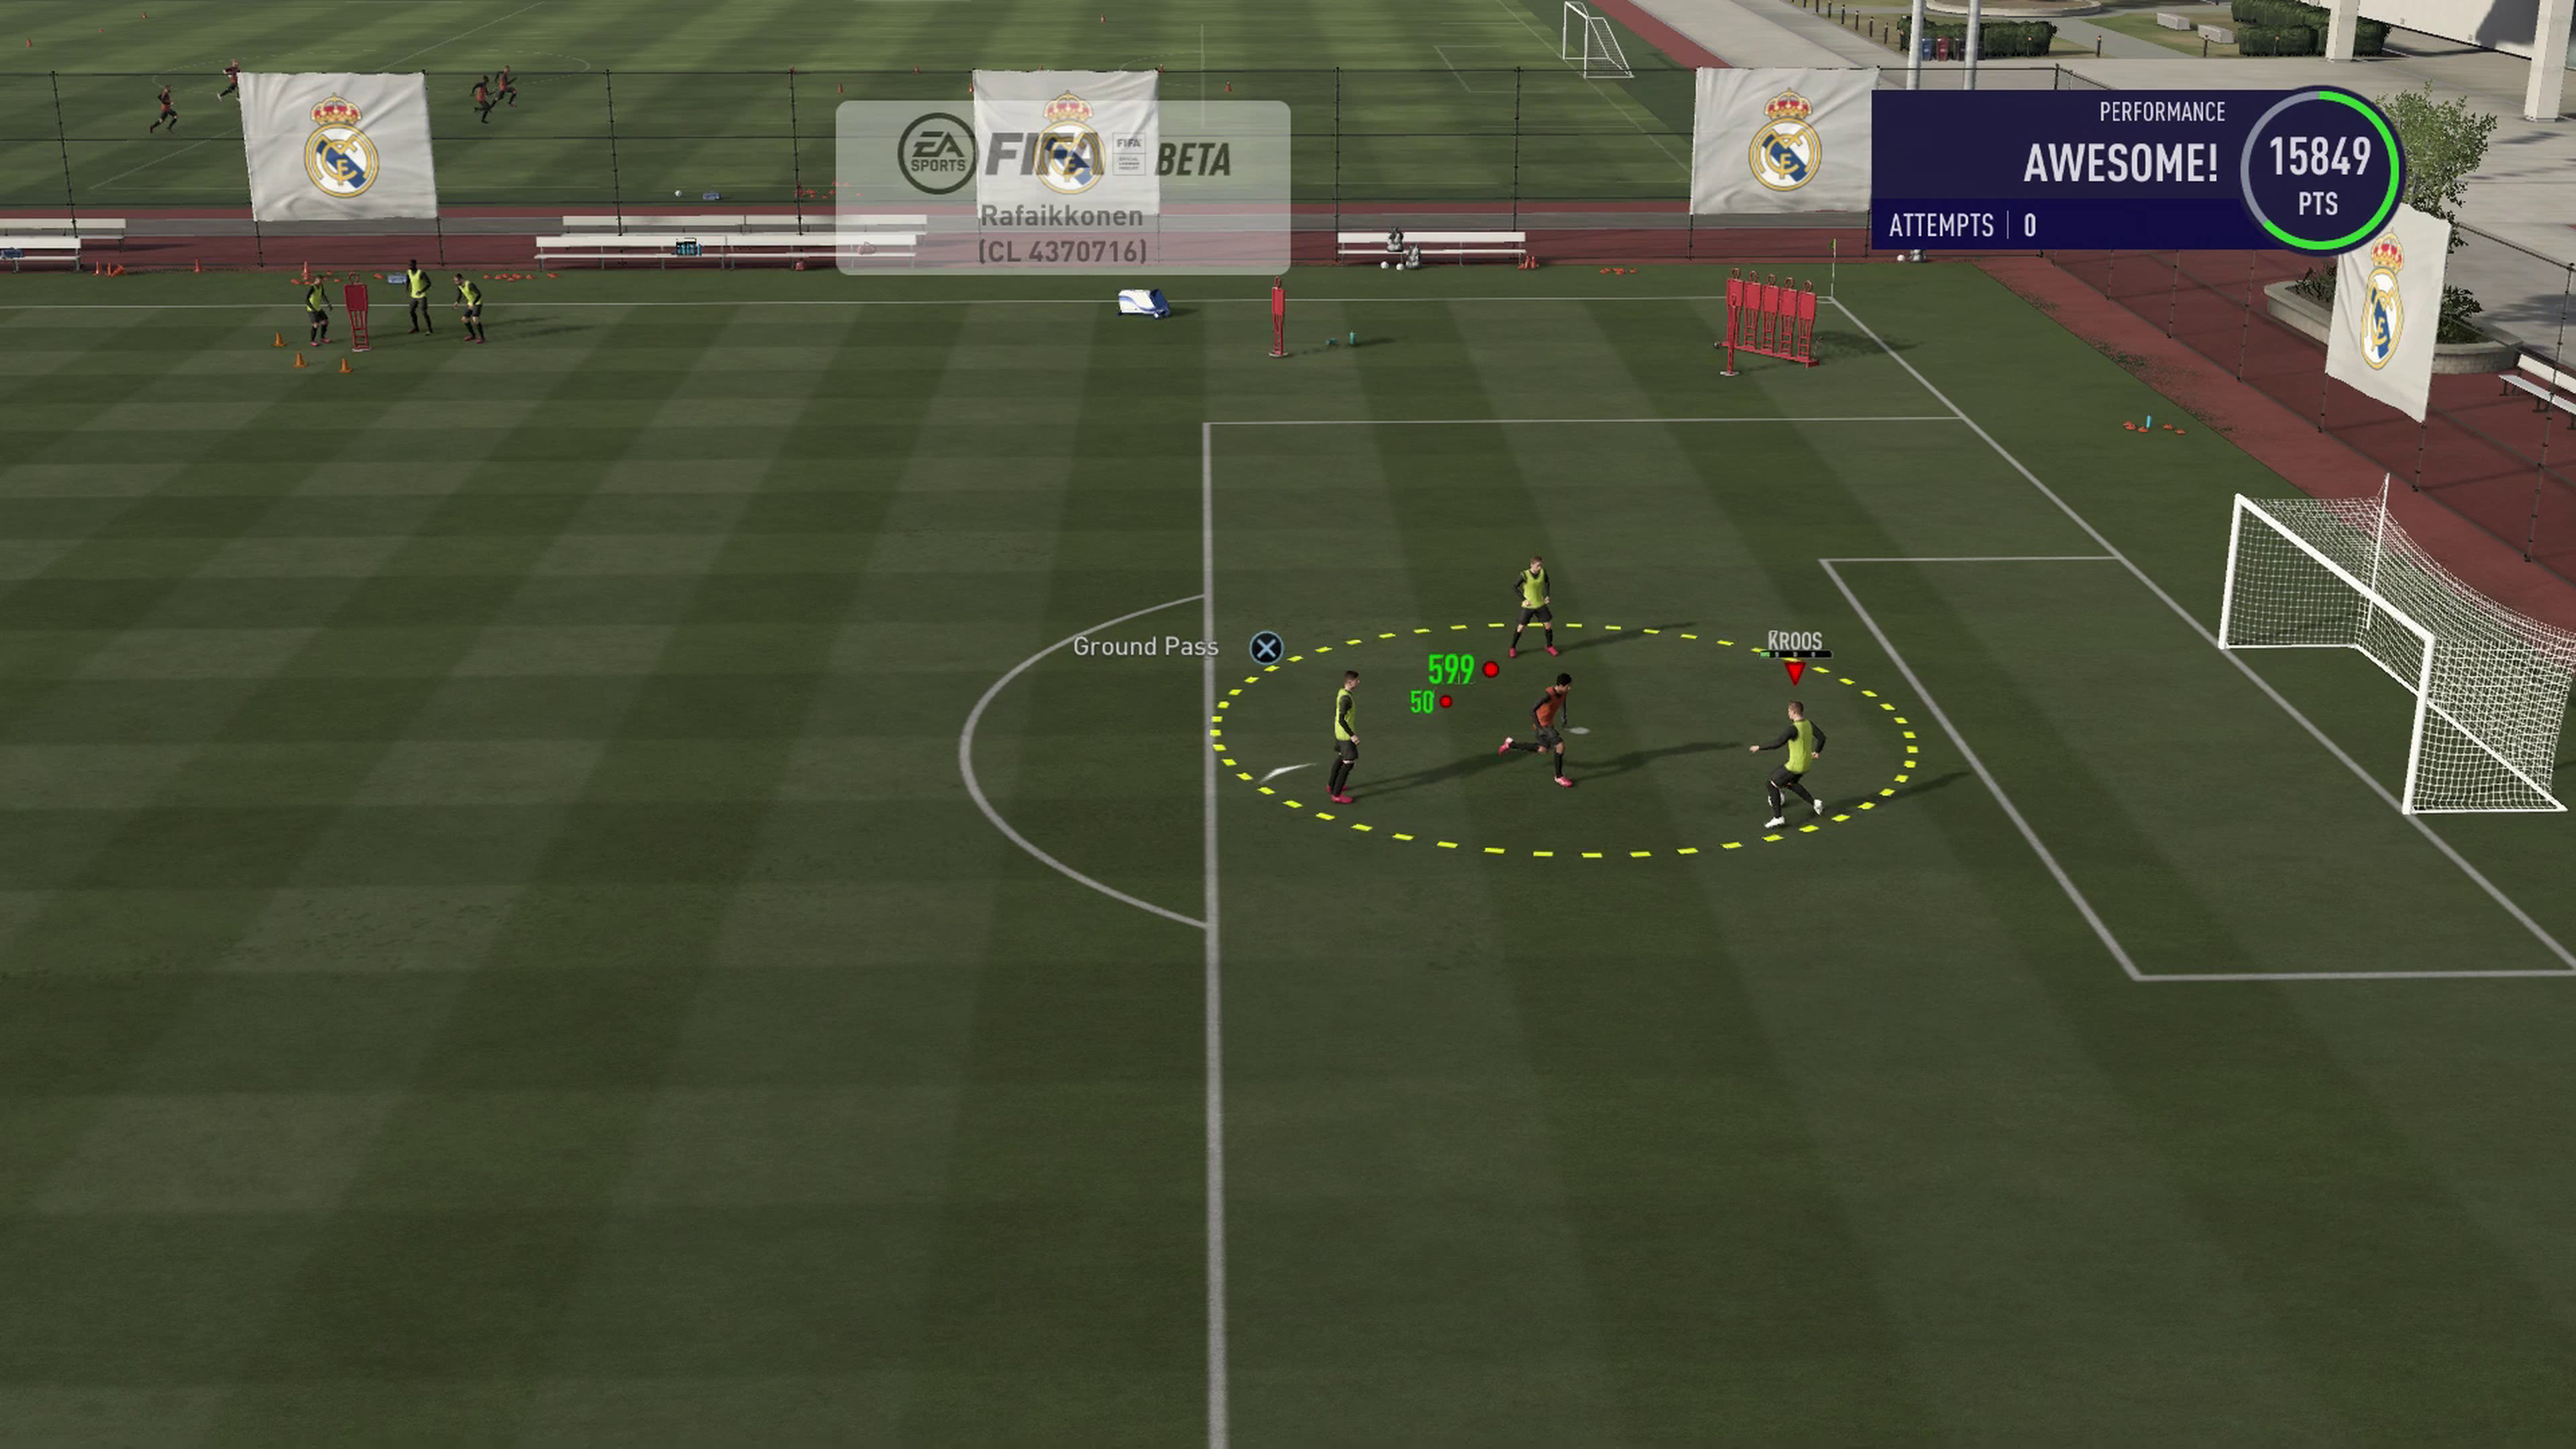 Impresiones de los modos Carrera y Kick Off de FIFA 21 para PS4, Xbox One y PC